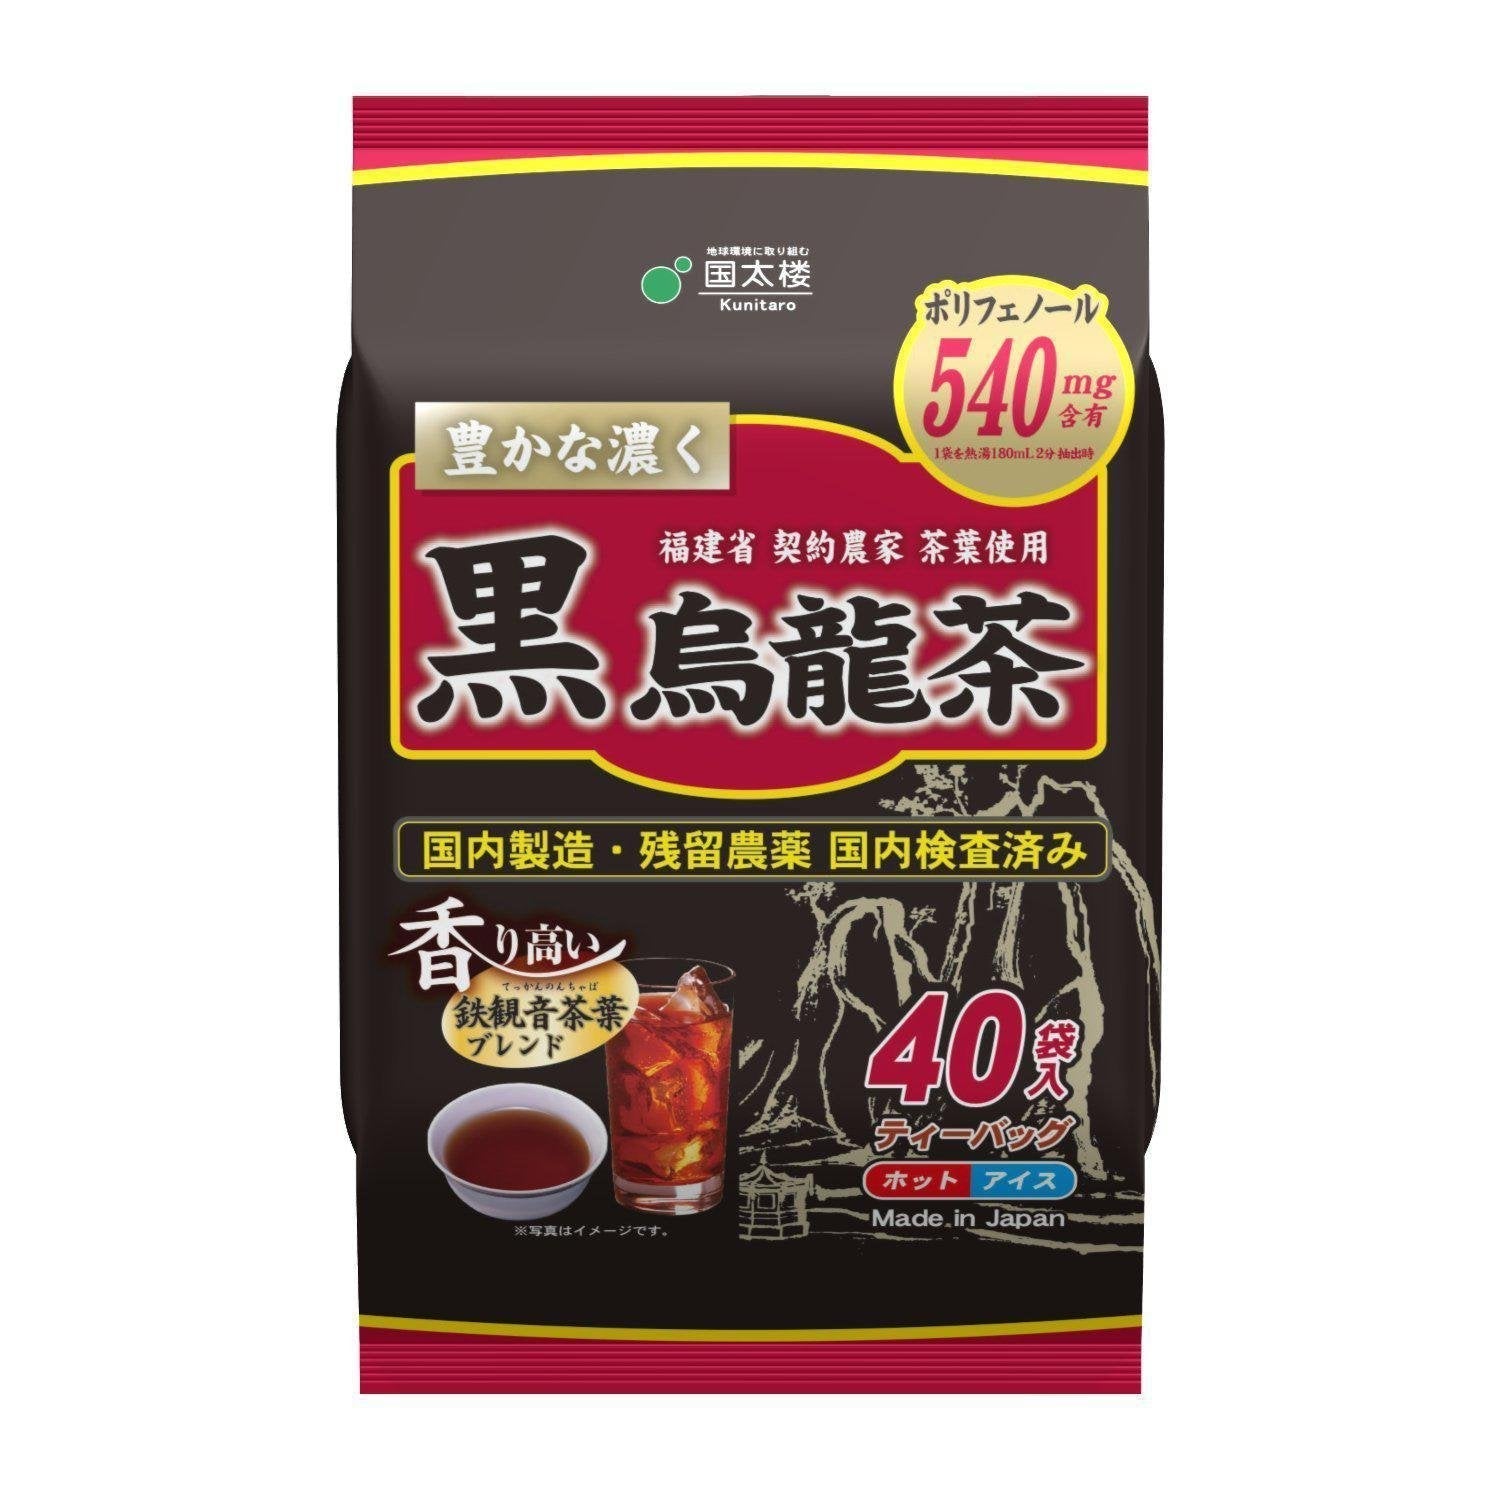 Kunitaro Black Oolong Tea 200g (40 Tea Bags)